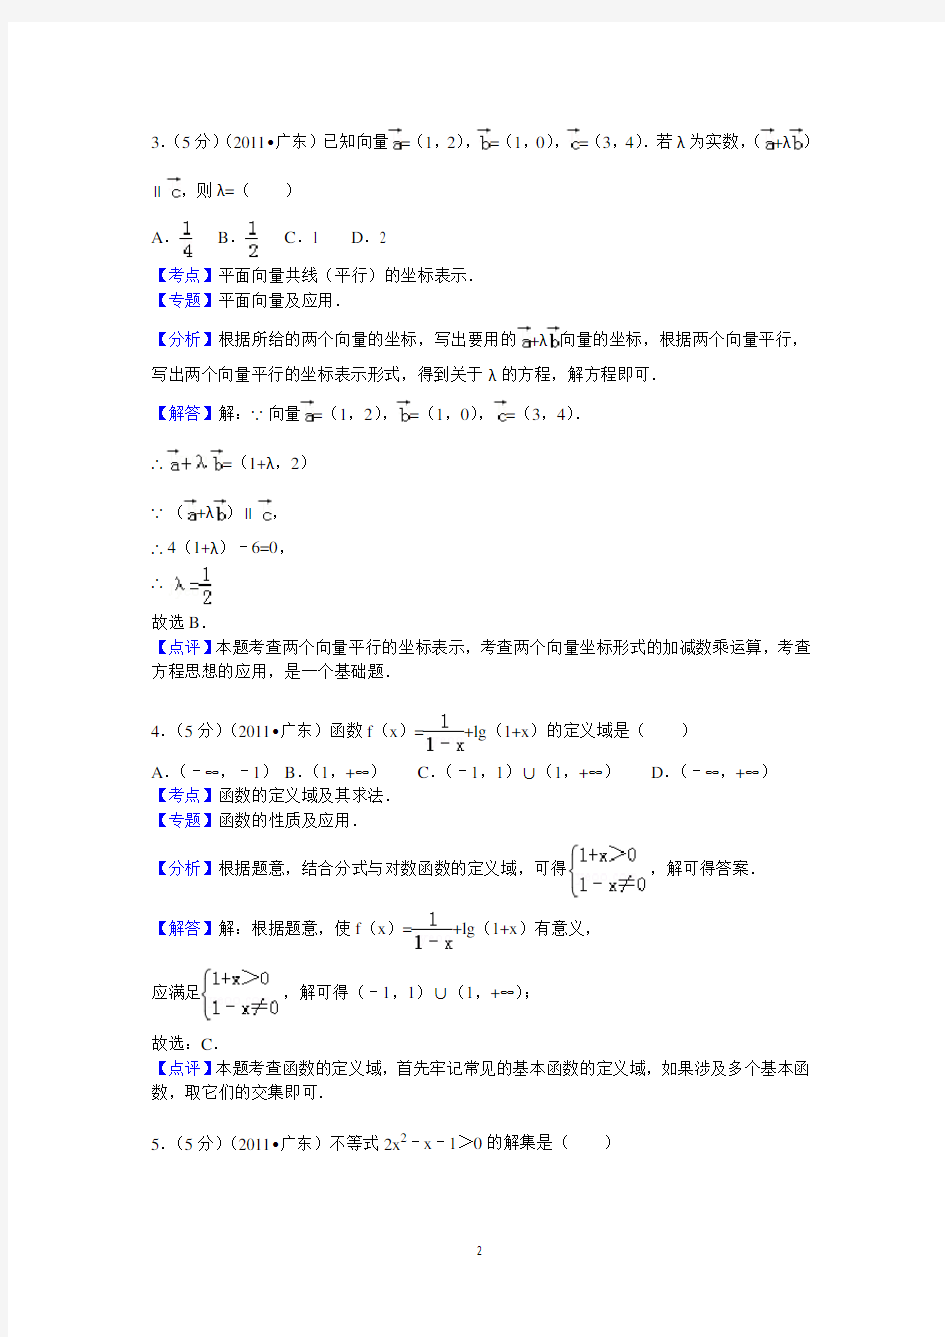 2011年广东省高考数学试卷(文科)答案与解析